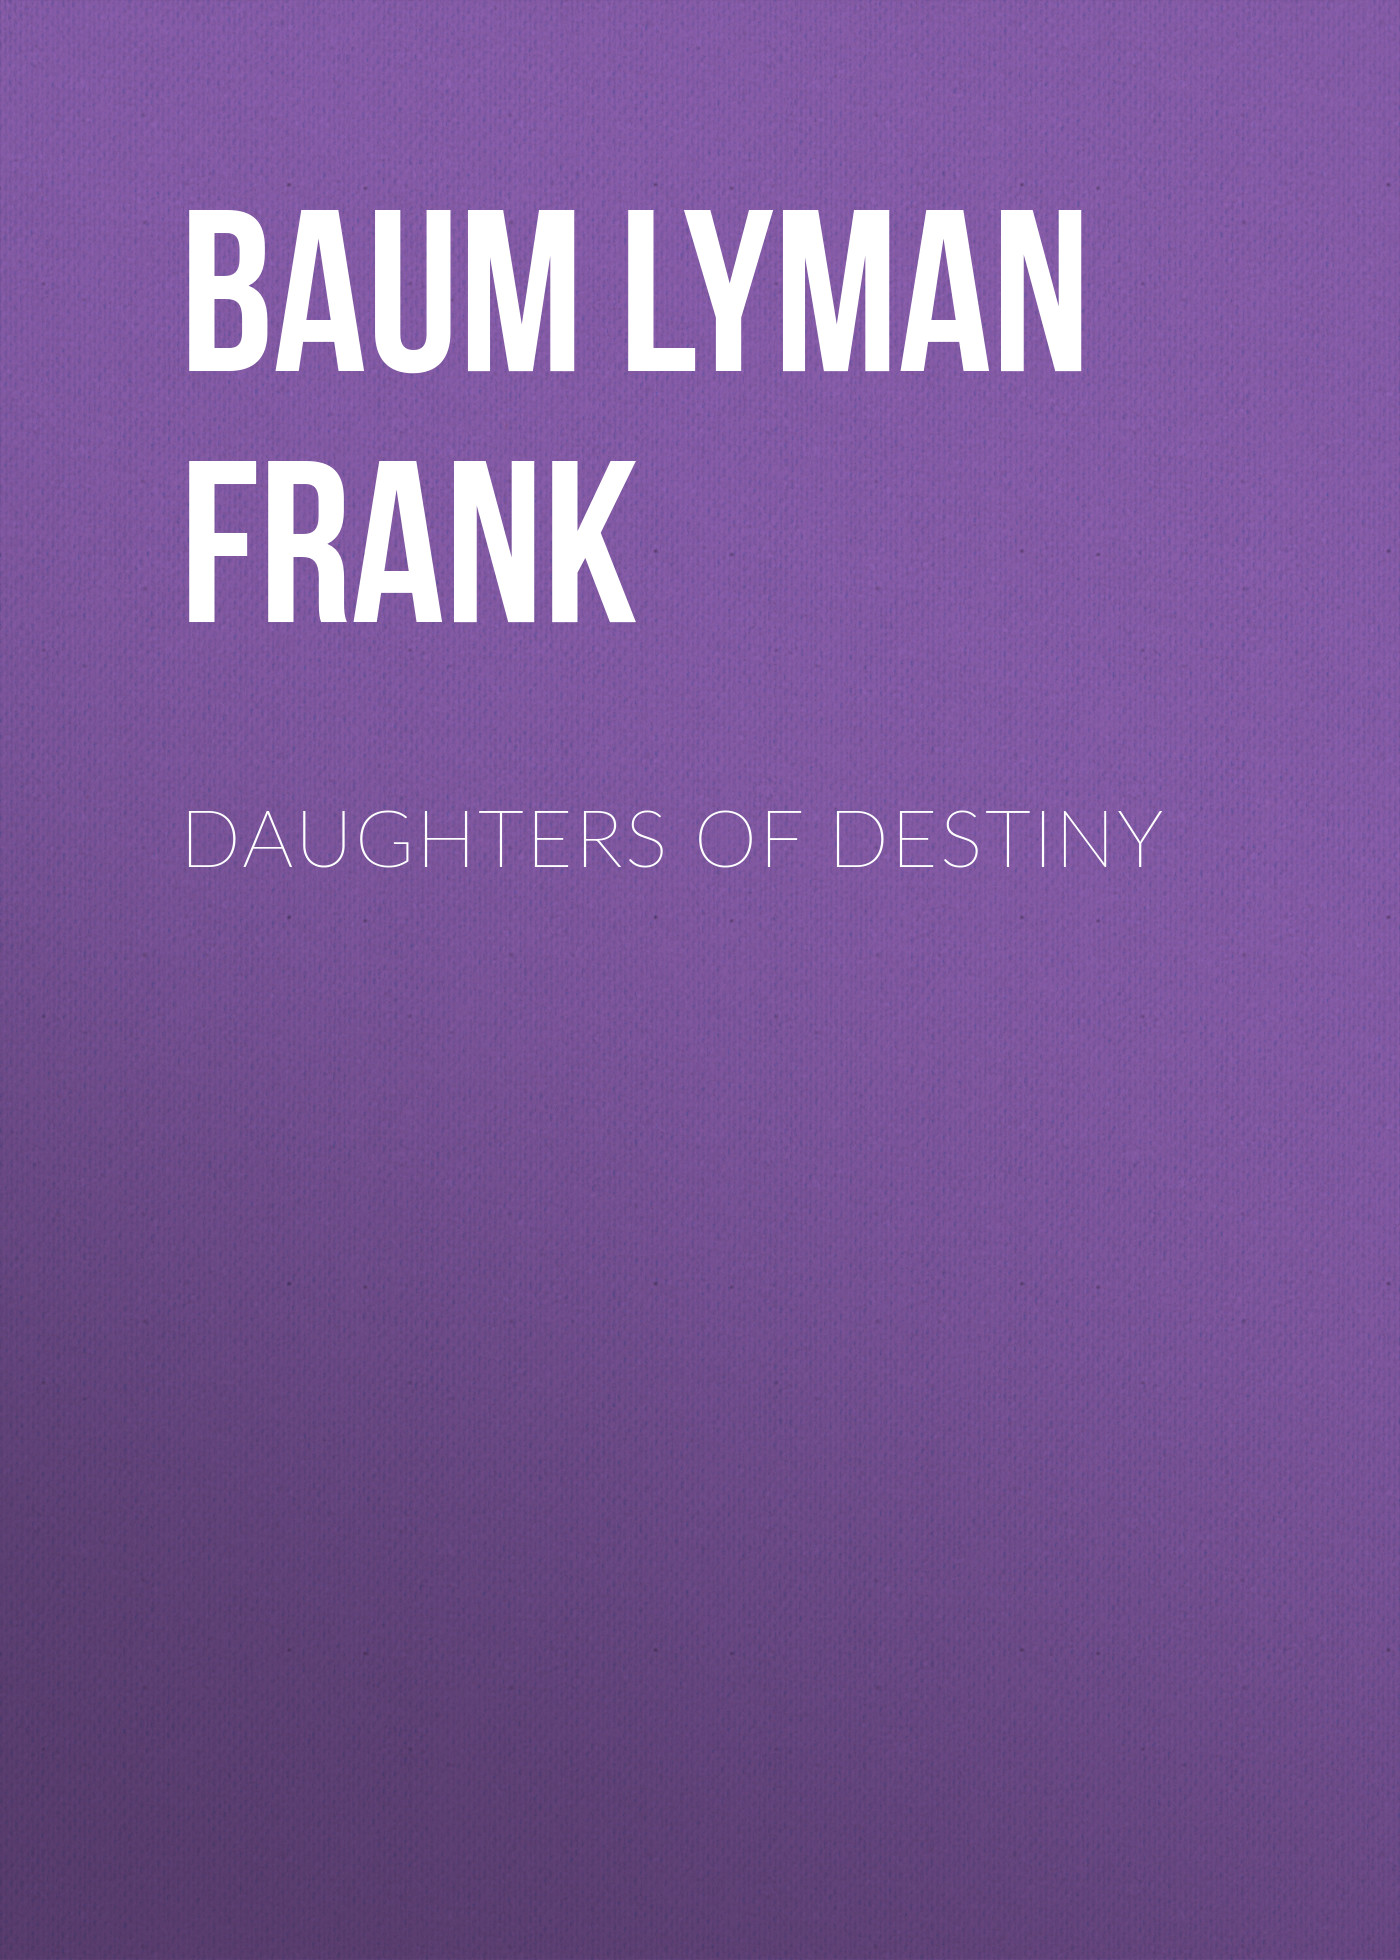 Книга Daughters of Destiny из серии , созданная Lyman Baum, может относится к жанру Зарубежная старинная литература, Зарубежная классика. Стоимость электронной книги Daughters of Destiny с идентификатором 25020467 составляет 0 руб.